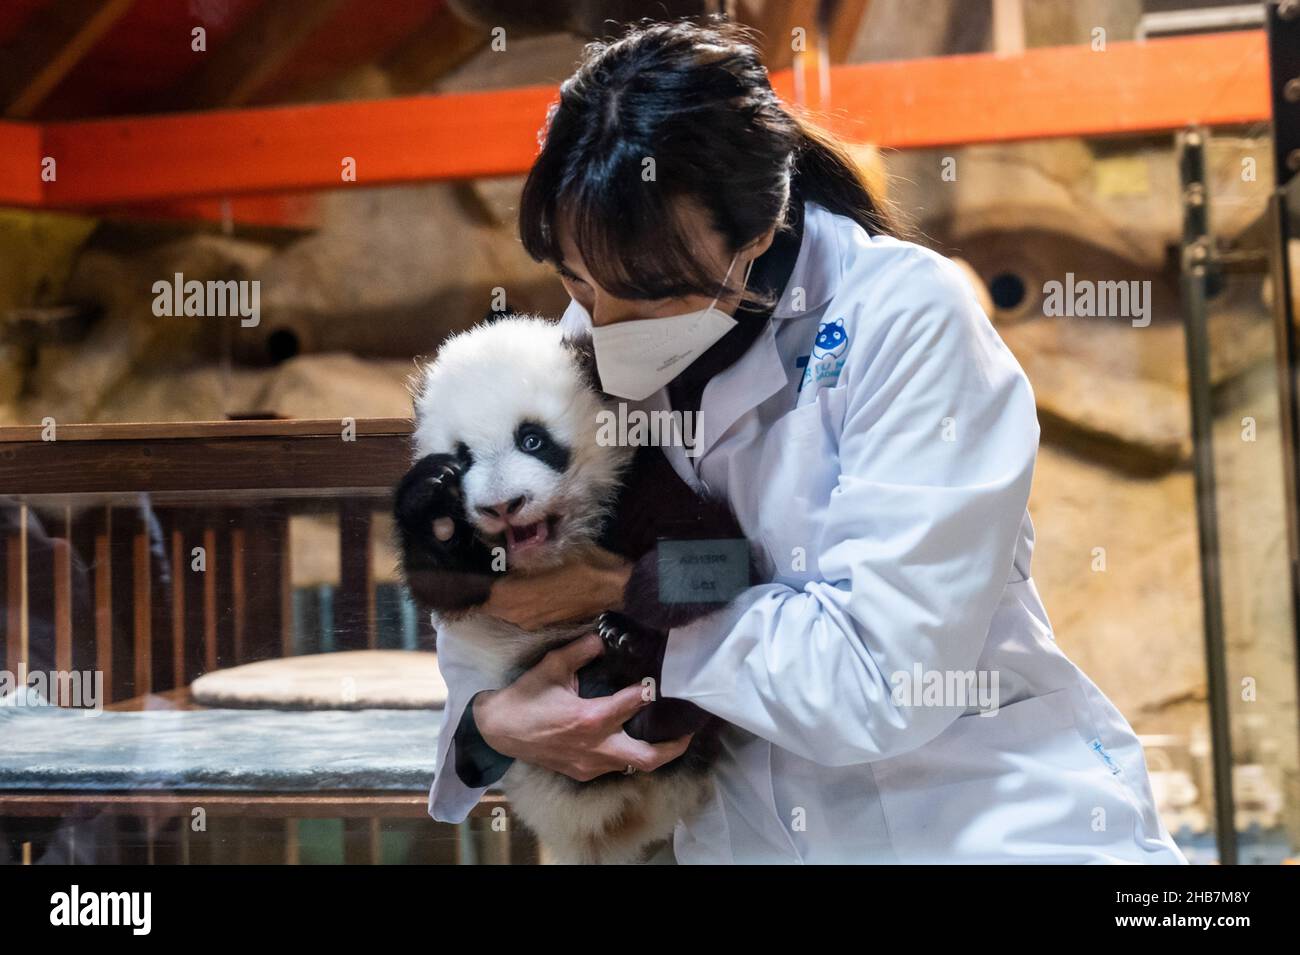 Madrid, Espagne.17th décembre 2021.Un travailleur du zoo est vu avec un bébé panda ours.Deux petits pandas jumeaux ont reçu leur nom (Jiu Jiu et vous) selon la tradition chinoise après 100 jours de naissance, lors d'une cérémonie au zoo de Madrid.Credit: Marcos del Mazo/Alay Live News Banque D'Images